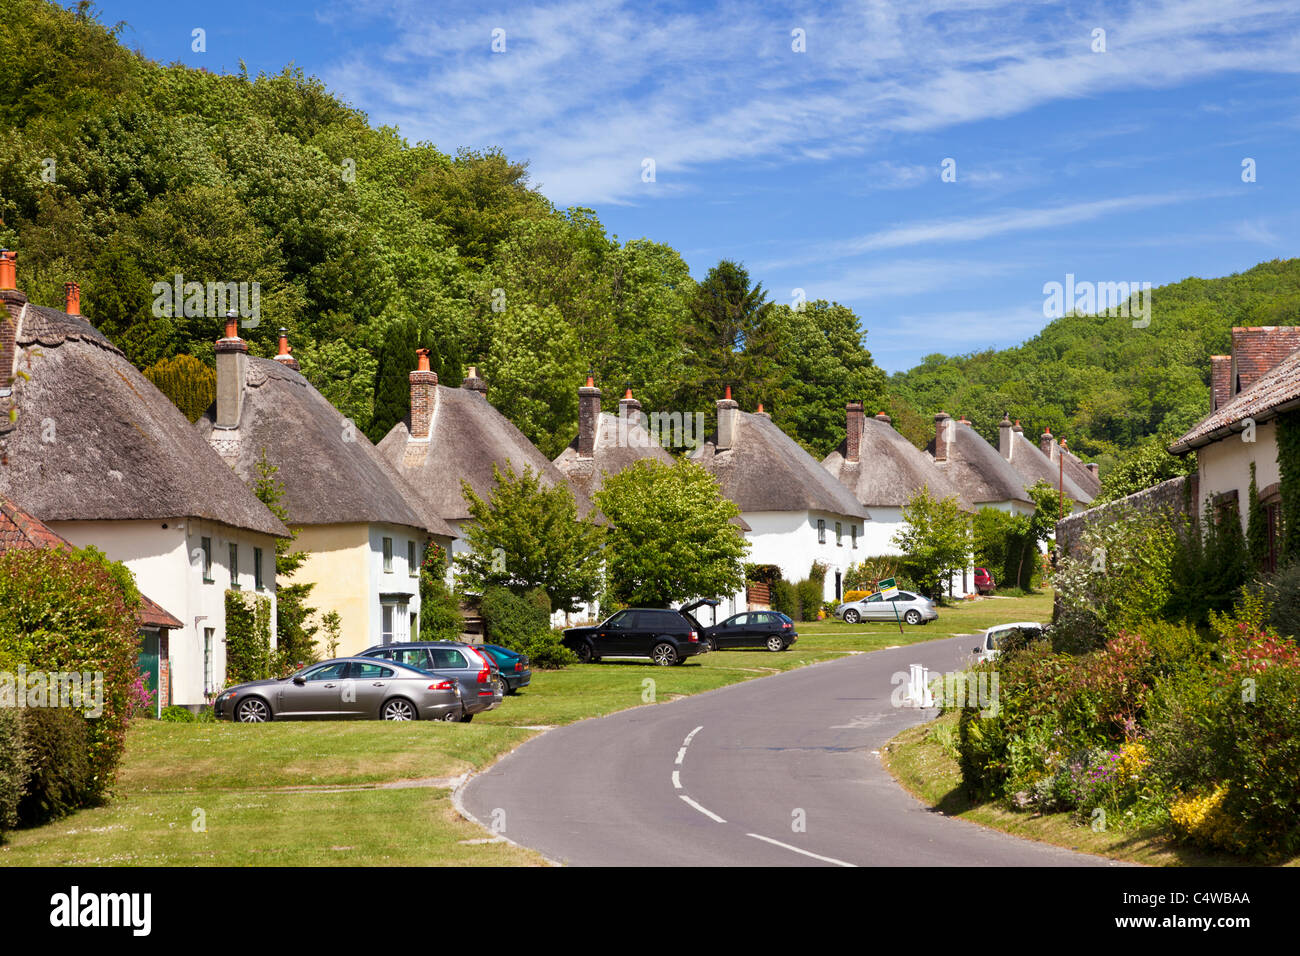 Schöne alte Dorf UK, Milton Abbas Dorf in Dorset, England, Vereinigtes Königreich mit traditionellen englischen strohgedeckten Häuser entlang der Straße Stockfoto